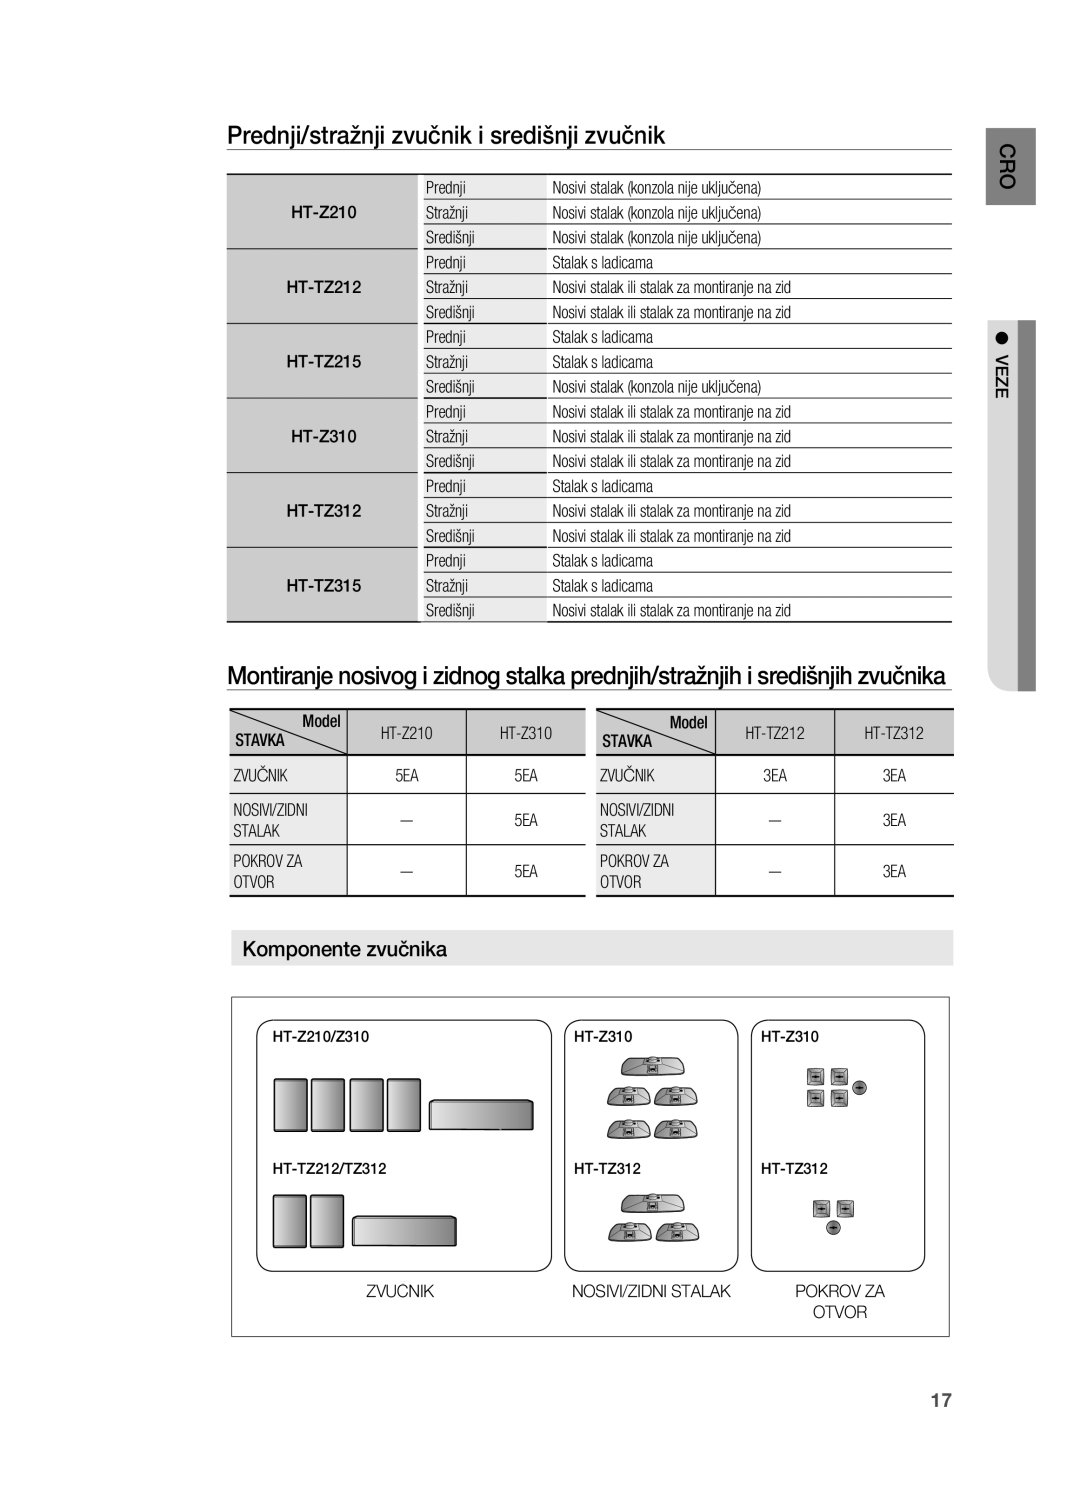 Samsung HT-TZ315R/EDC, HT-TZ212R/EDC Prednji/stražnji zvučnik i središnji zvučnik, Komponente zvučnika, O Cr, Pokrov Za 